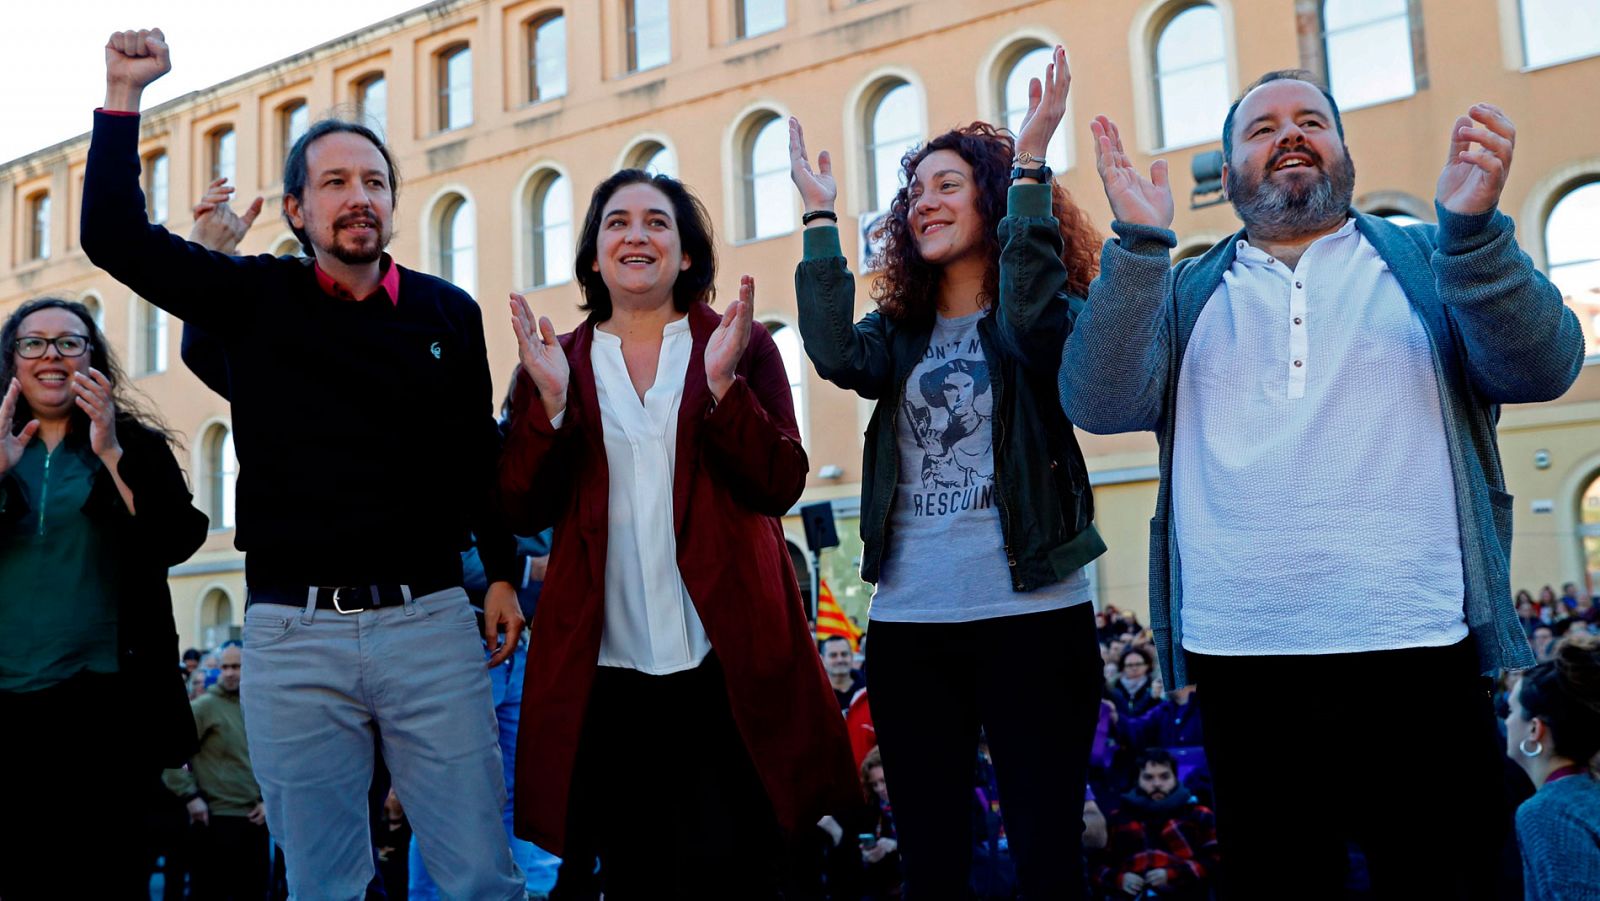 Elecciones generales 2019 | Iglesias pide el voto en Cataluña para garantizar "el diálogo" frente a "la cárcel y los jueces"